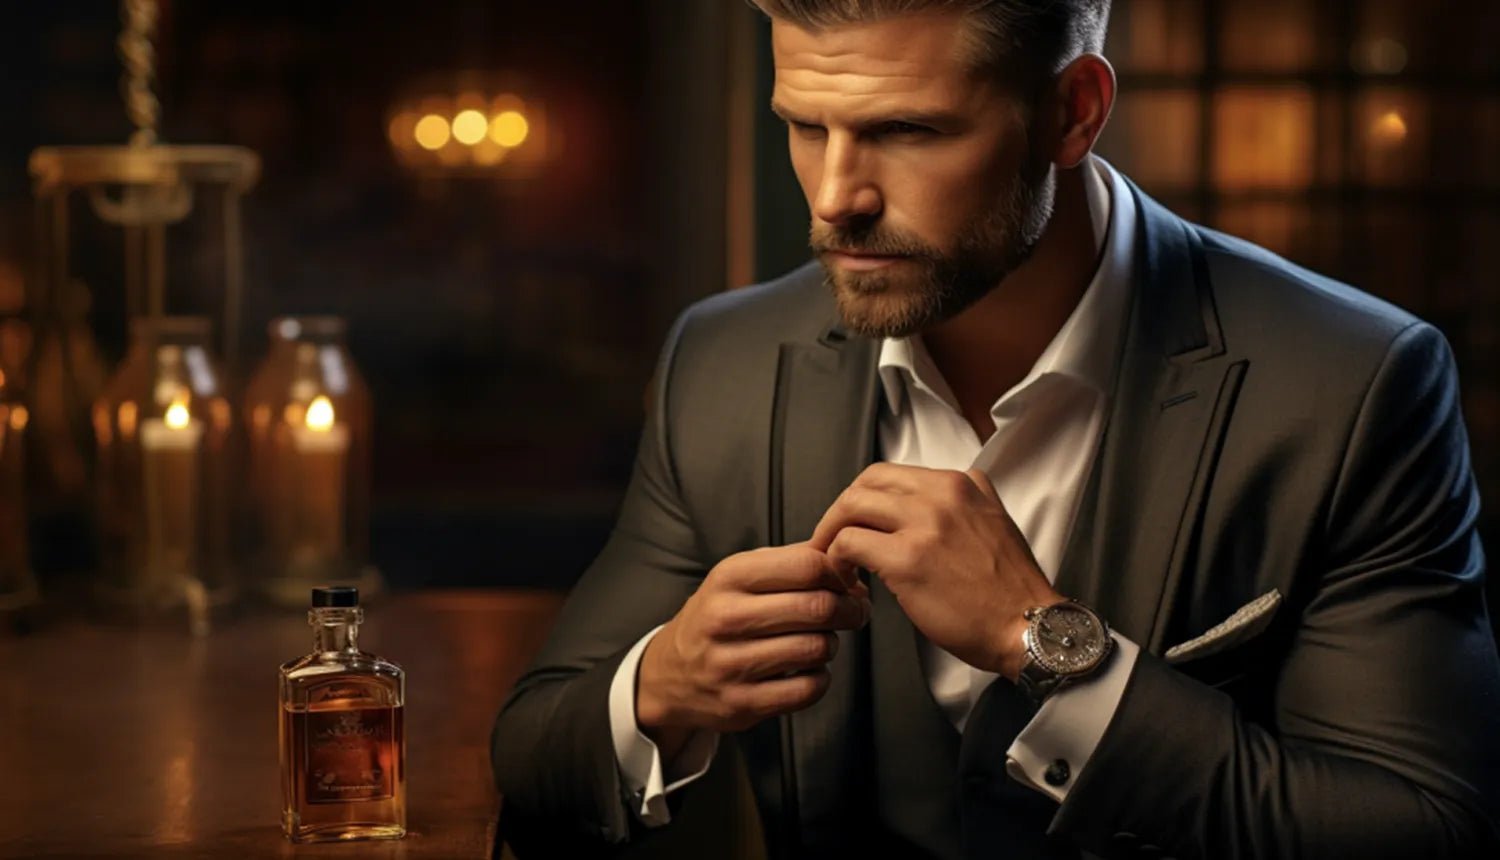 Como escolher o melhor perfume masculino (II) - Dr. JONES. Imagem gerada por IA mostra um homem de pele clara, terno e camisa social branca sentado próximo a uma mesa, em um ambiente à meia-luz, na qual se observa um perfume na cor âmbar.